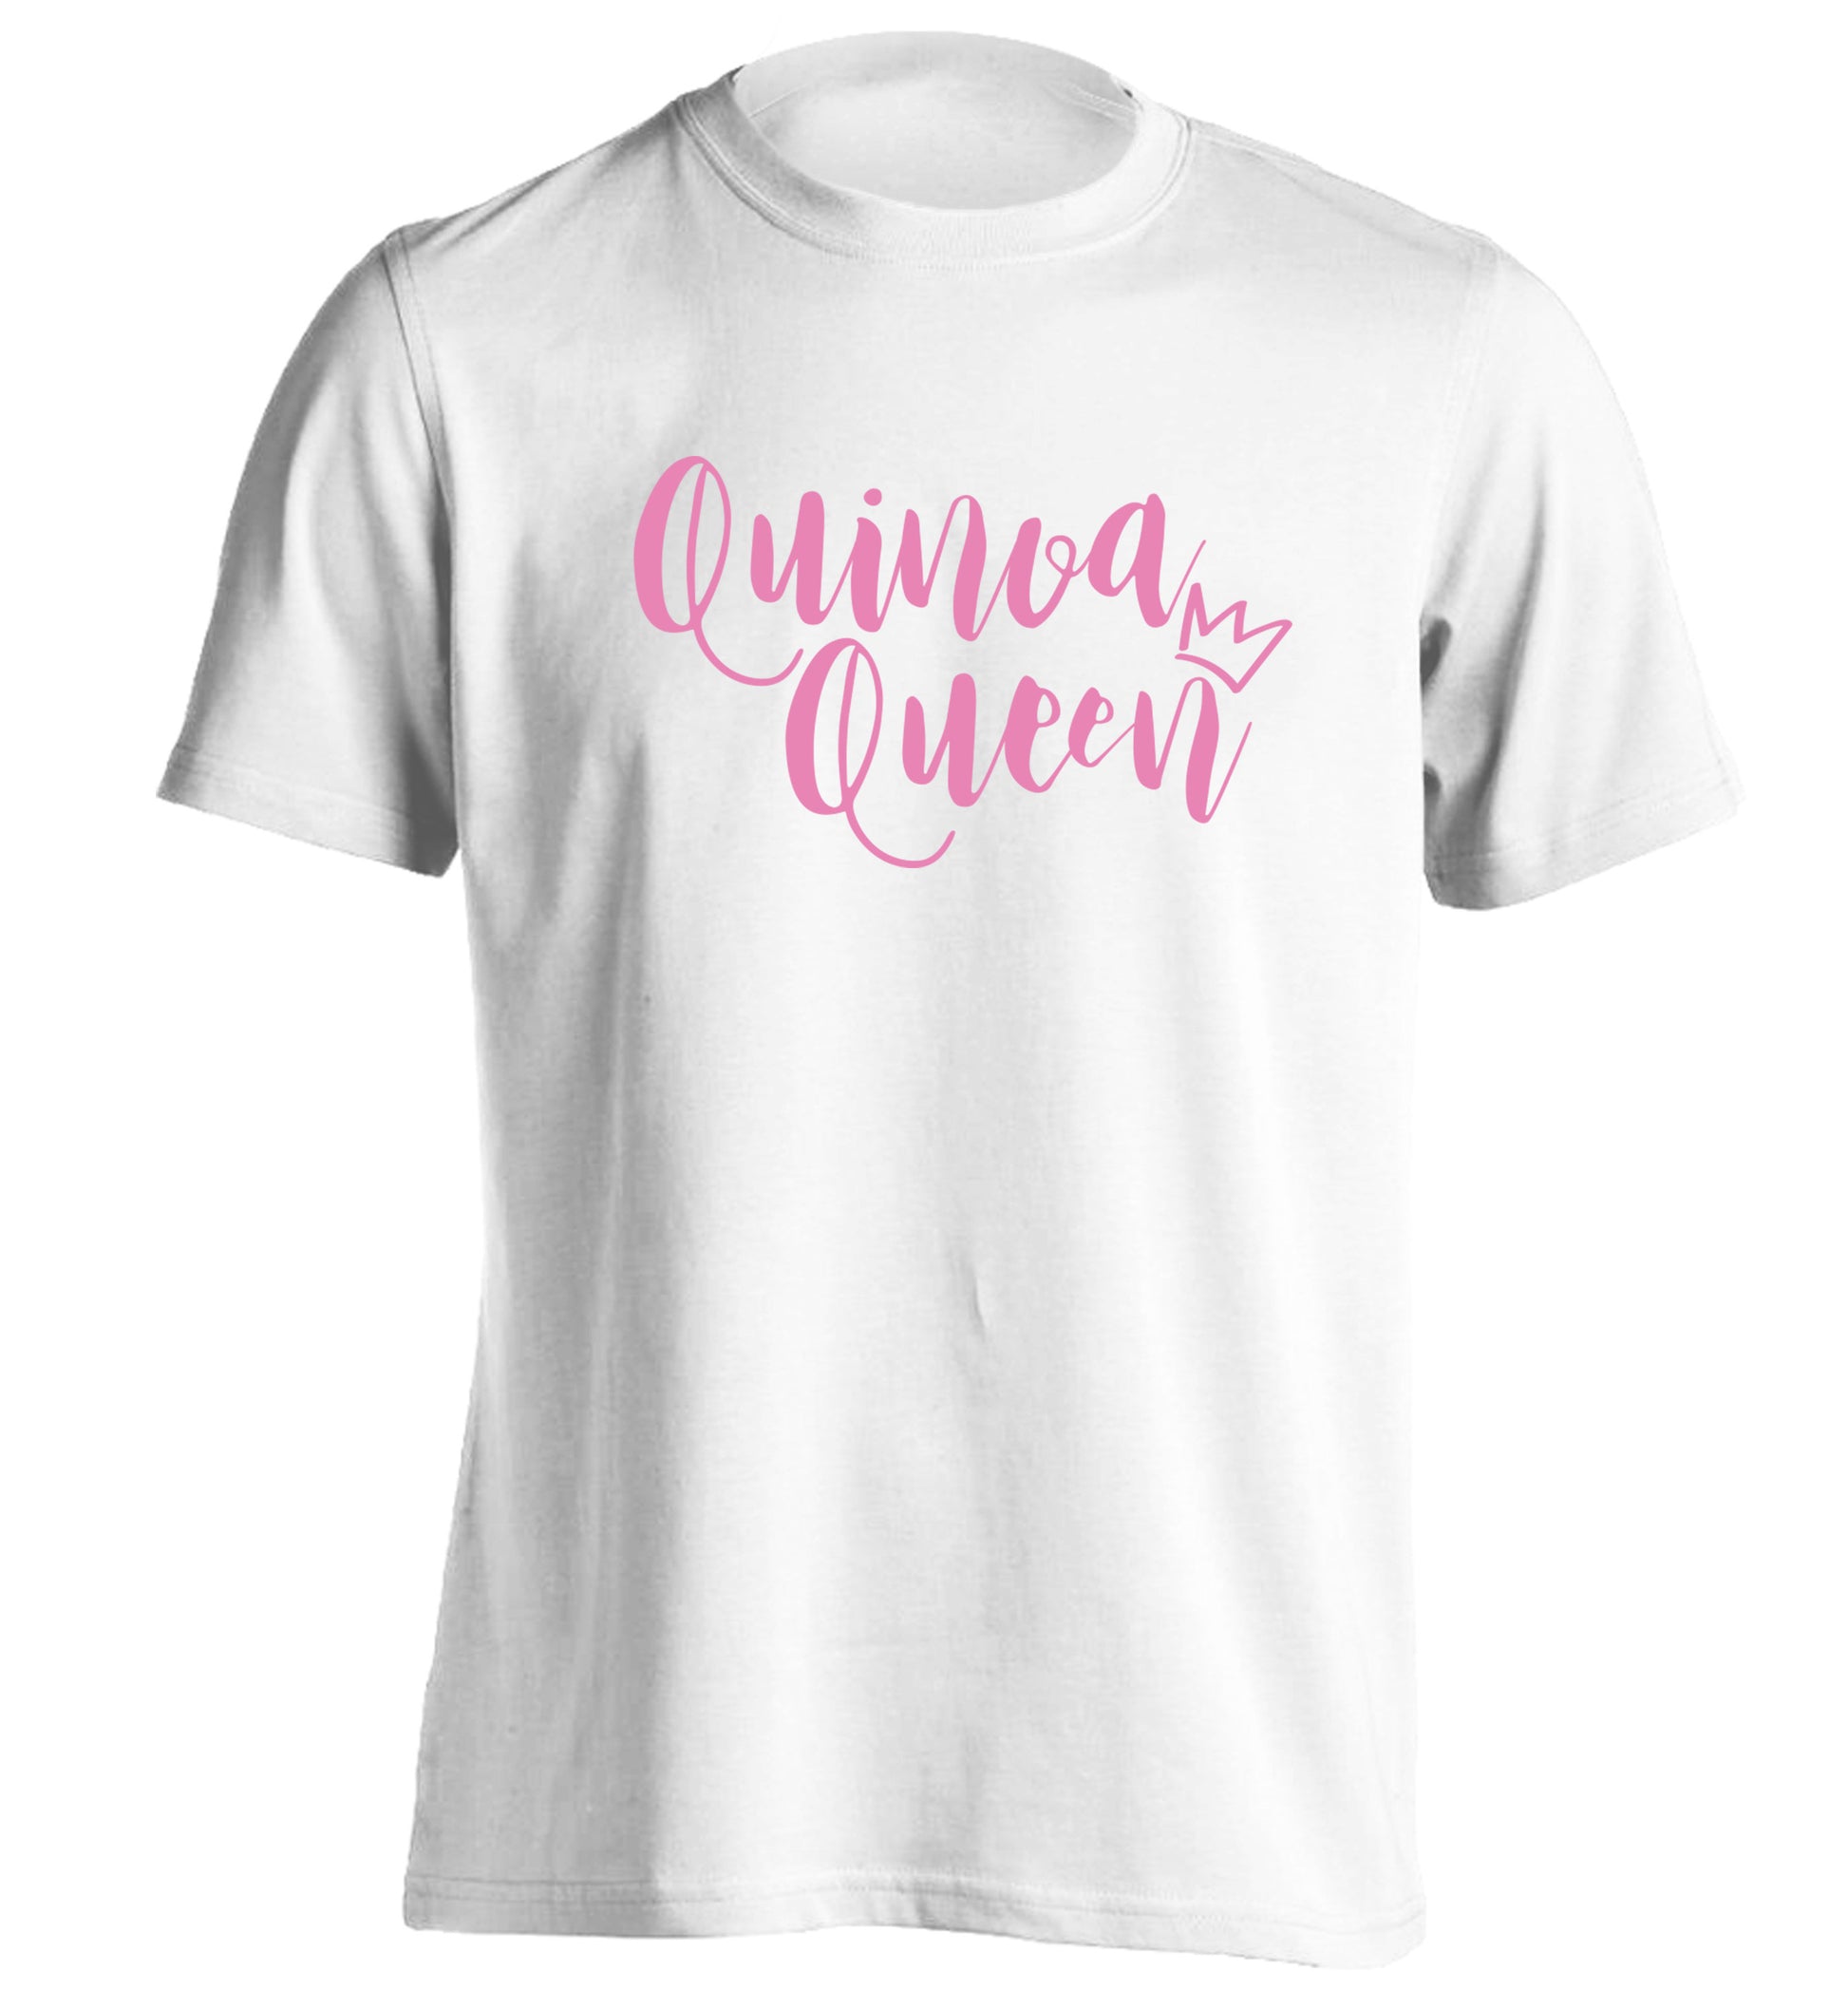 Quinoa Queen adults unisex white Tshirt 2XL